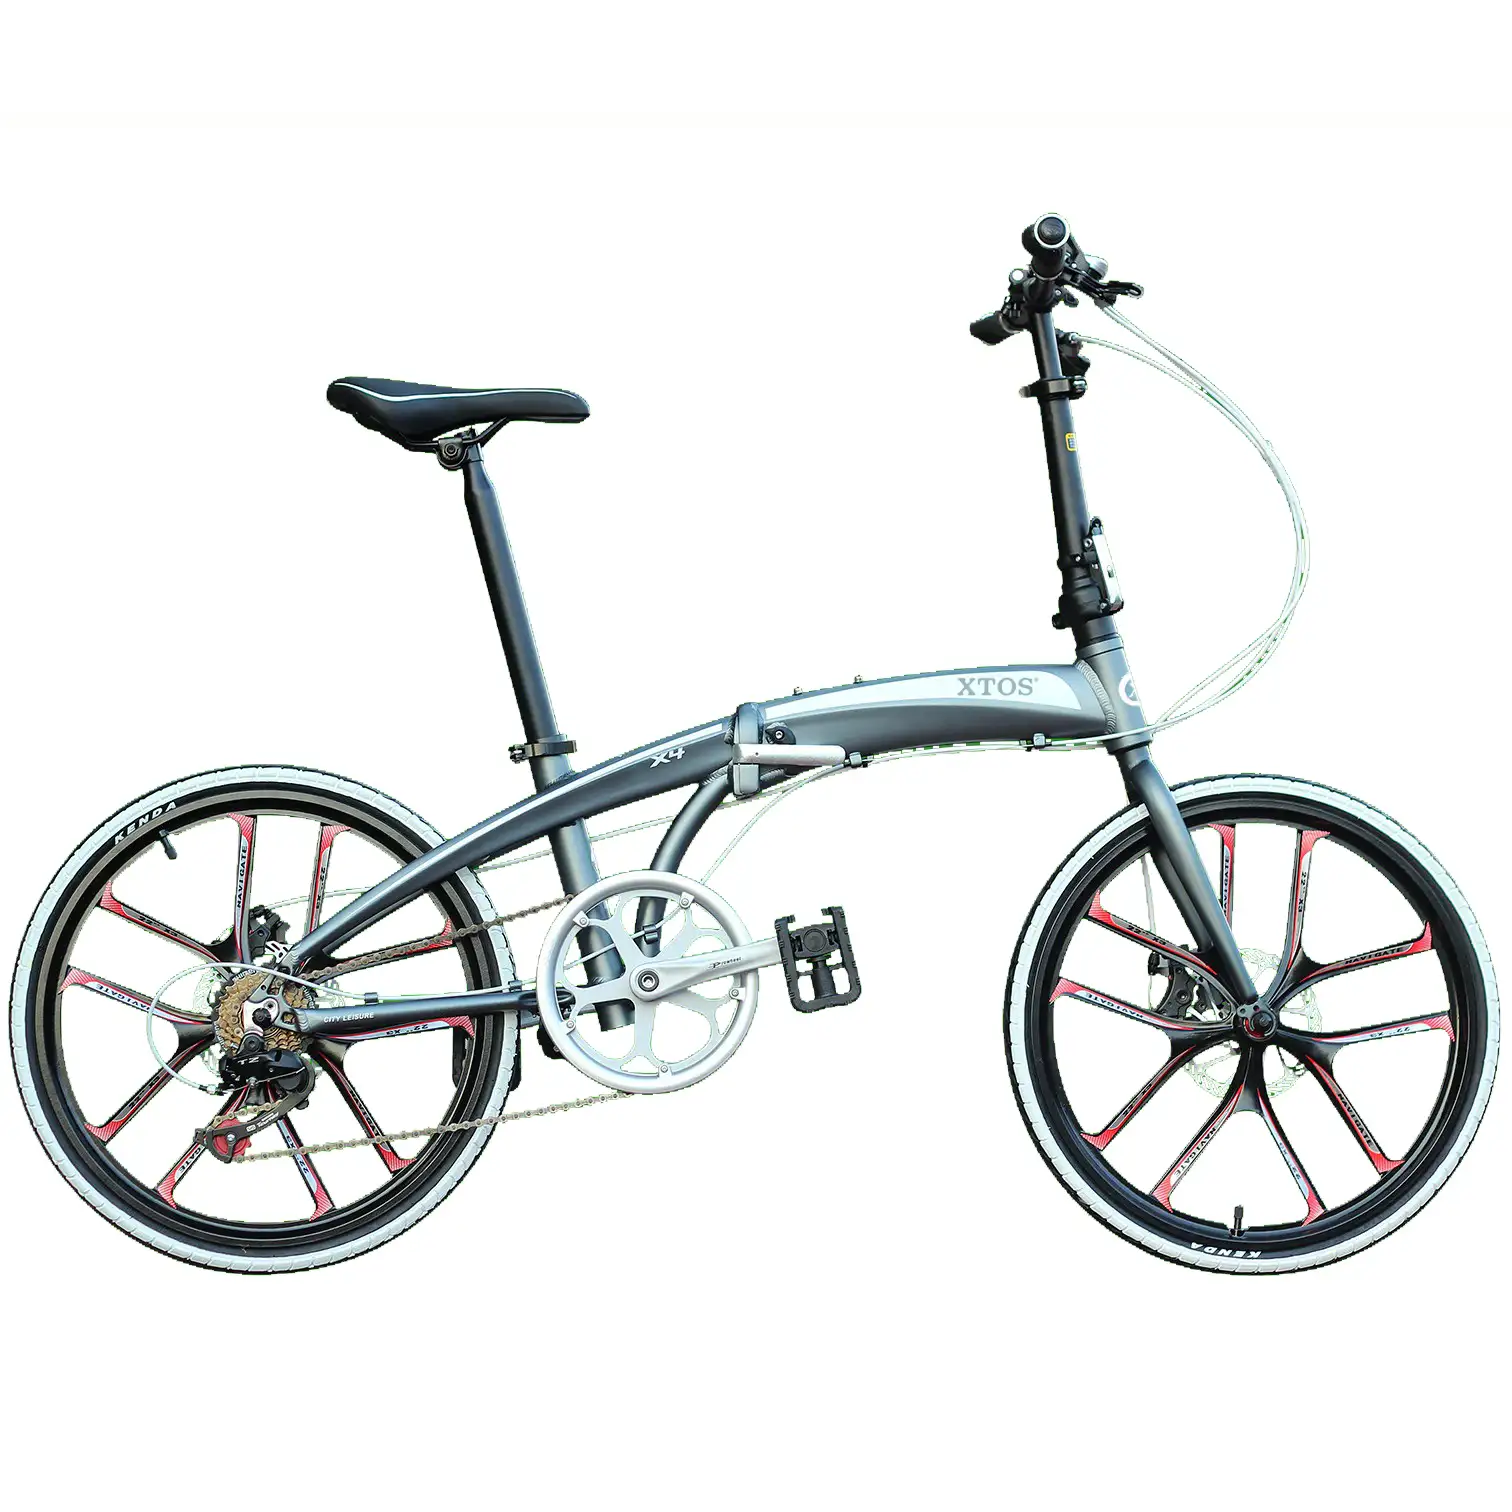 XTOS-Mini bicicleta plegable de aleación de aluminio para hombre y mujer, cicla Plegable ligera de 20 pulgadas con diseño alemán